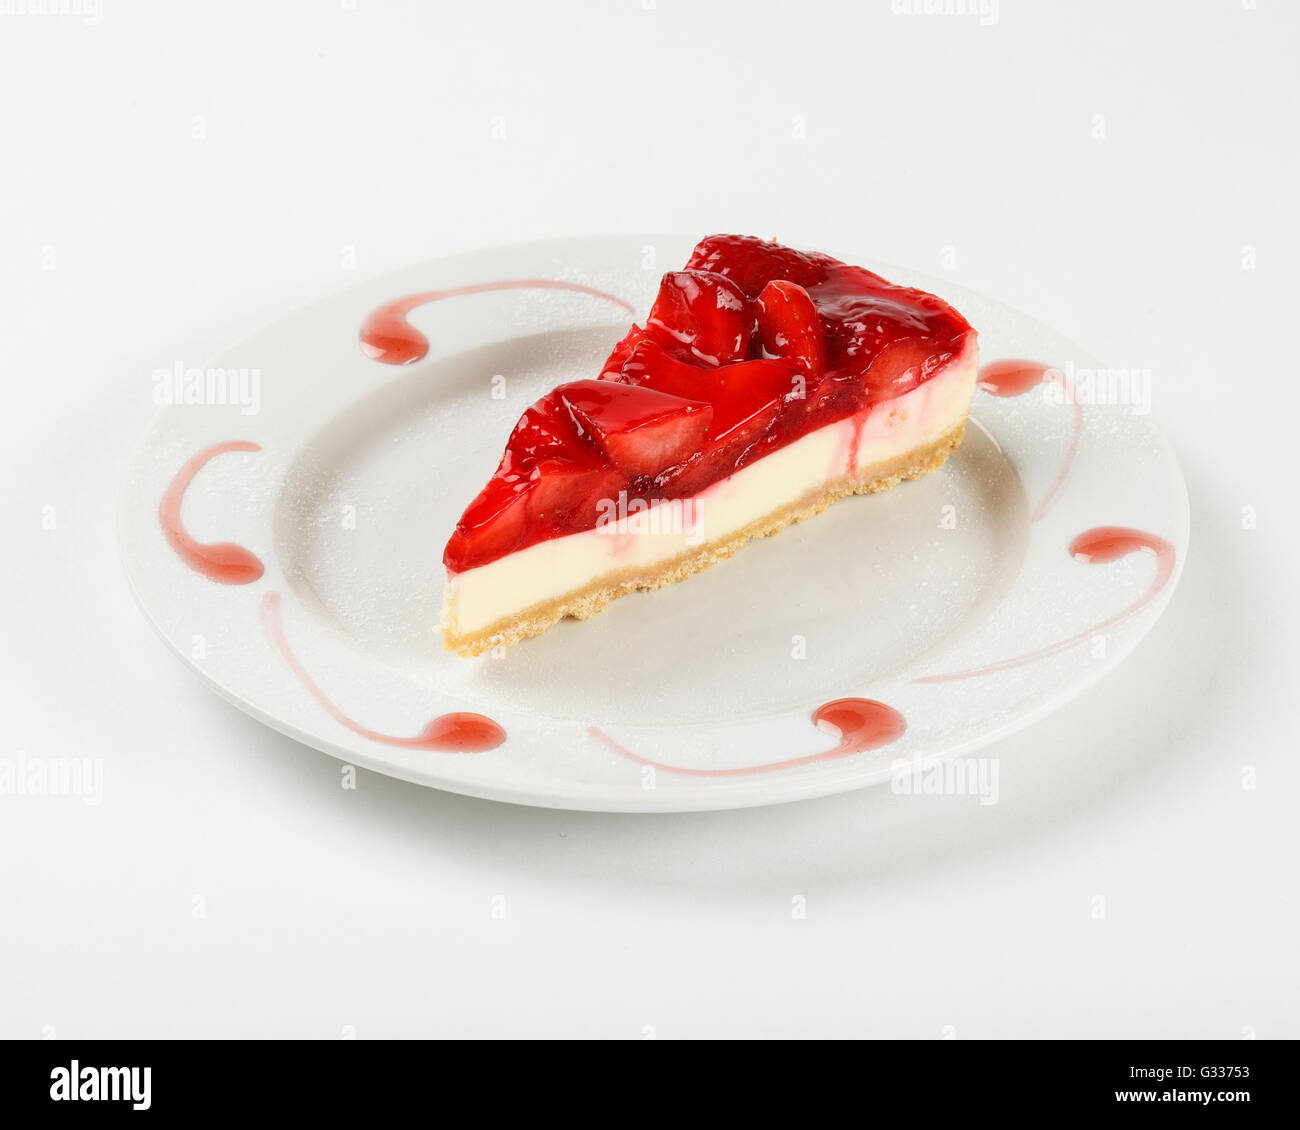 Lecker Käsekuchen mit Erdbeer-Gelee und Marmelade auf dem Teller auf weißem Hintergrund. Schließen Sie die Seitenansicht. Stockfoto